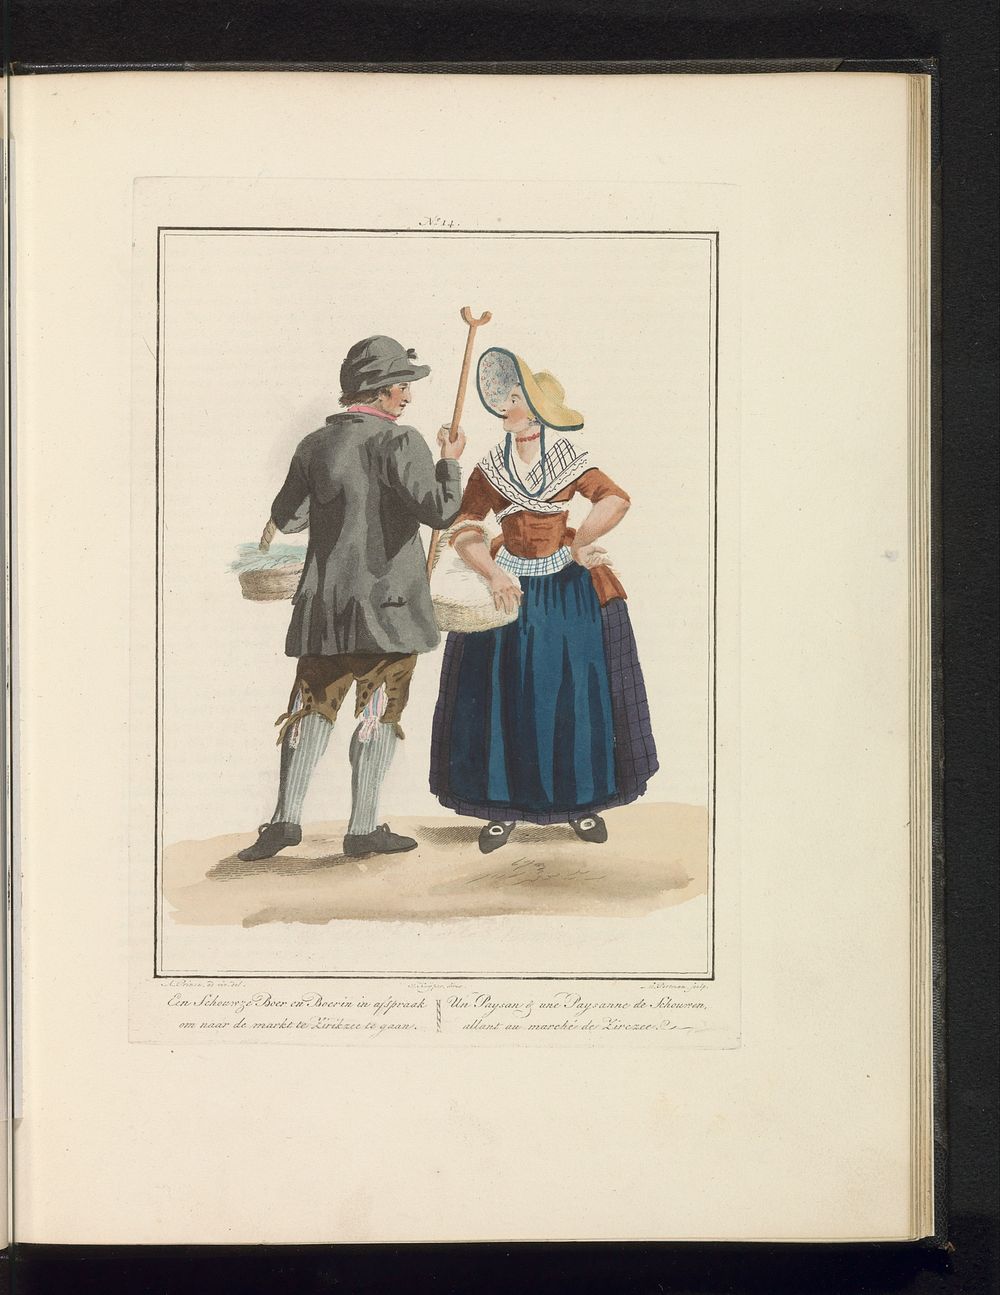 Man en vrouw van Schouwen (1829) by Ludwig Gottlieb Portman, Adriaan Prince, Jan Willem Pieneman, Jacques Kuyper and Evert…